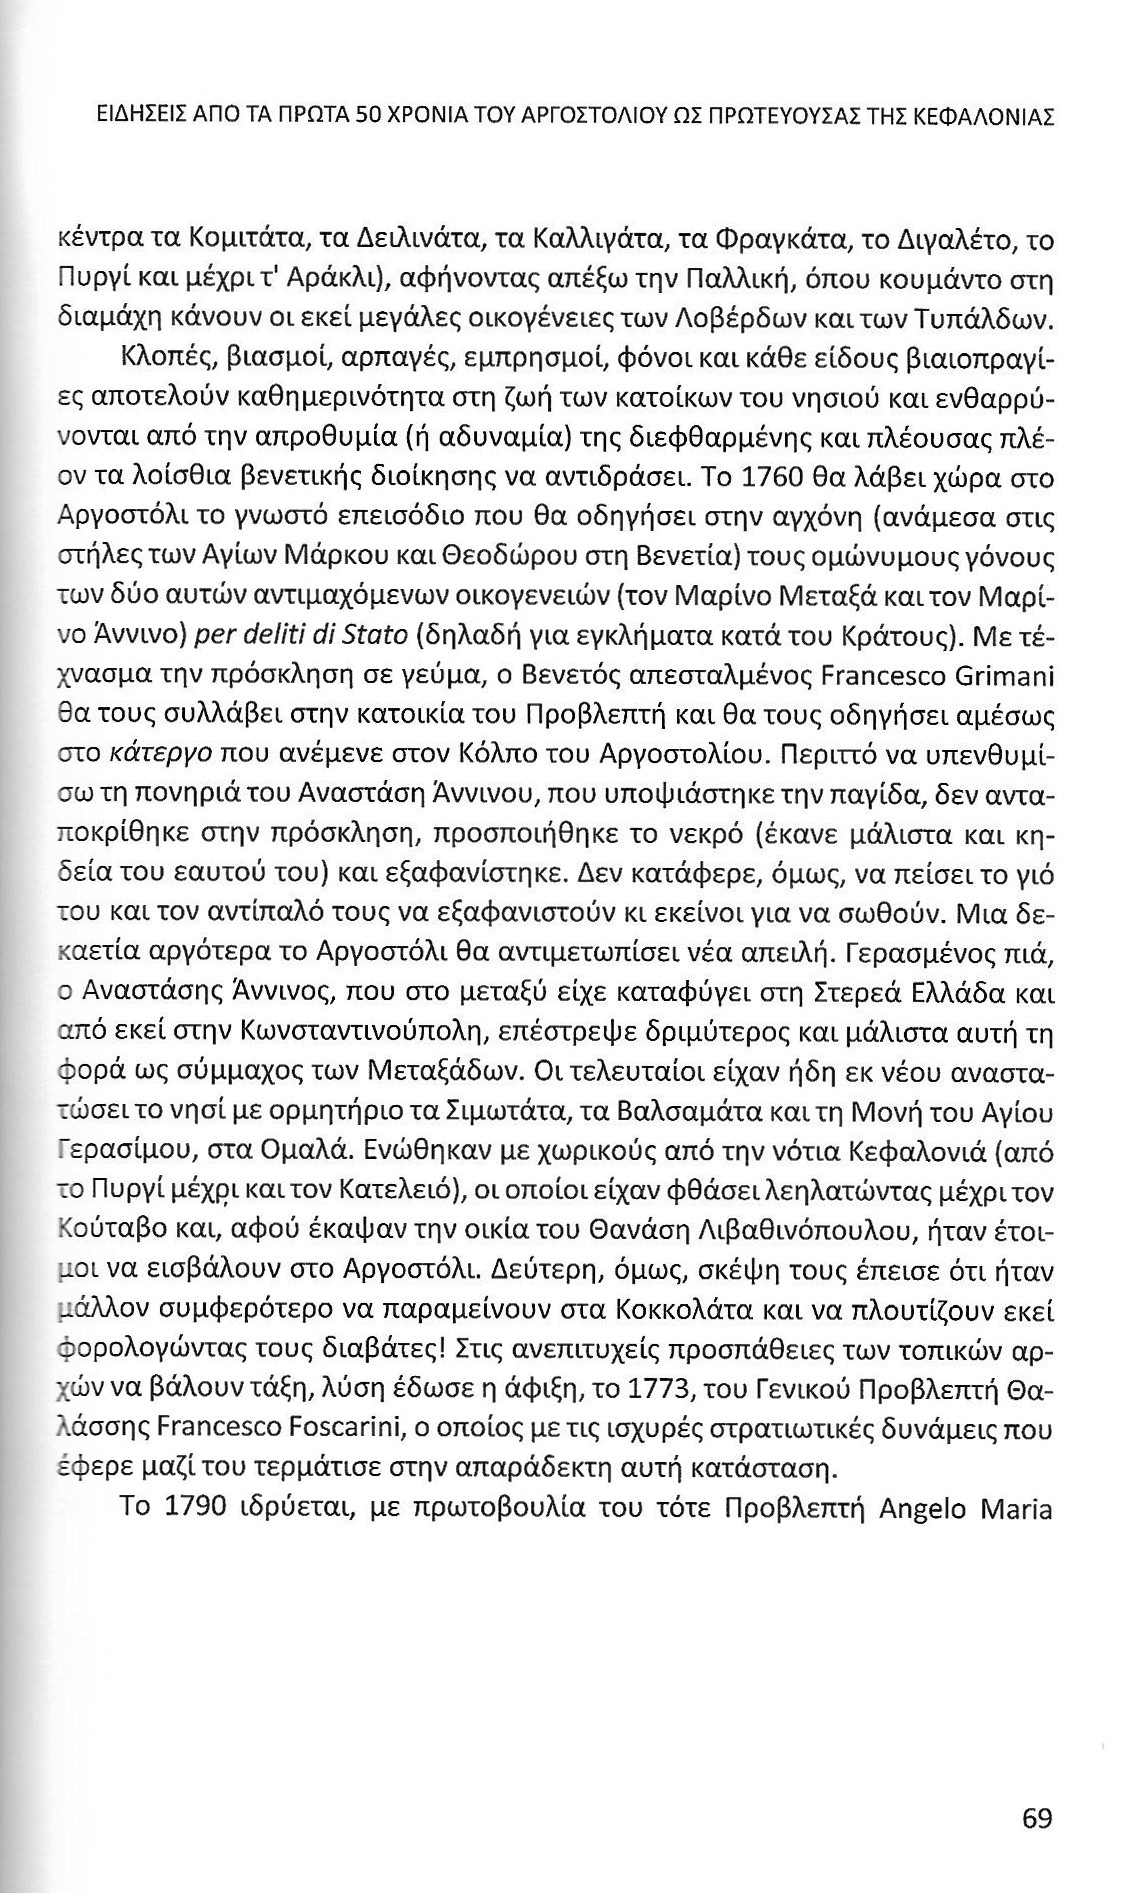 Πρώτα 50 χρόνια Αργοστολίου ως πρωτεύουσας Κεφαλονιάς, Ιονικά Ανάλεκτα, τ. 7, σελ. 69